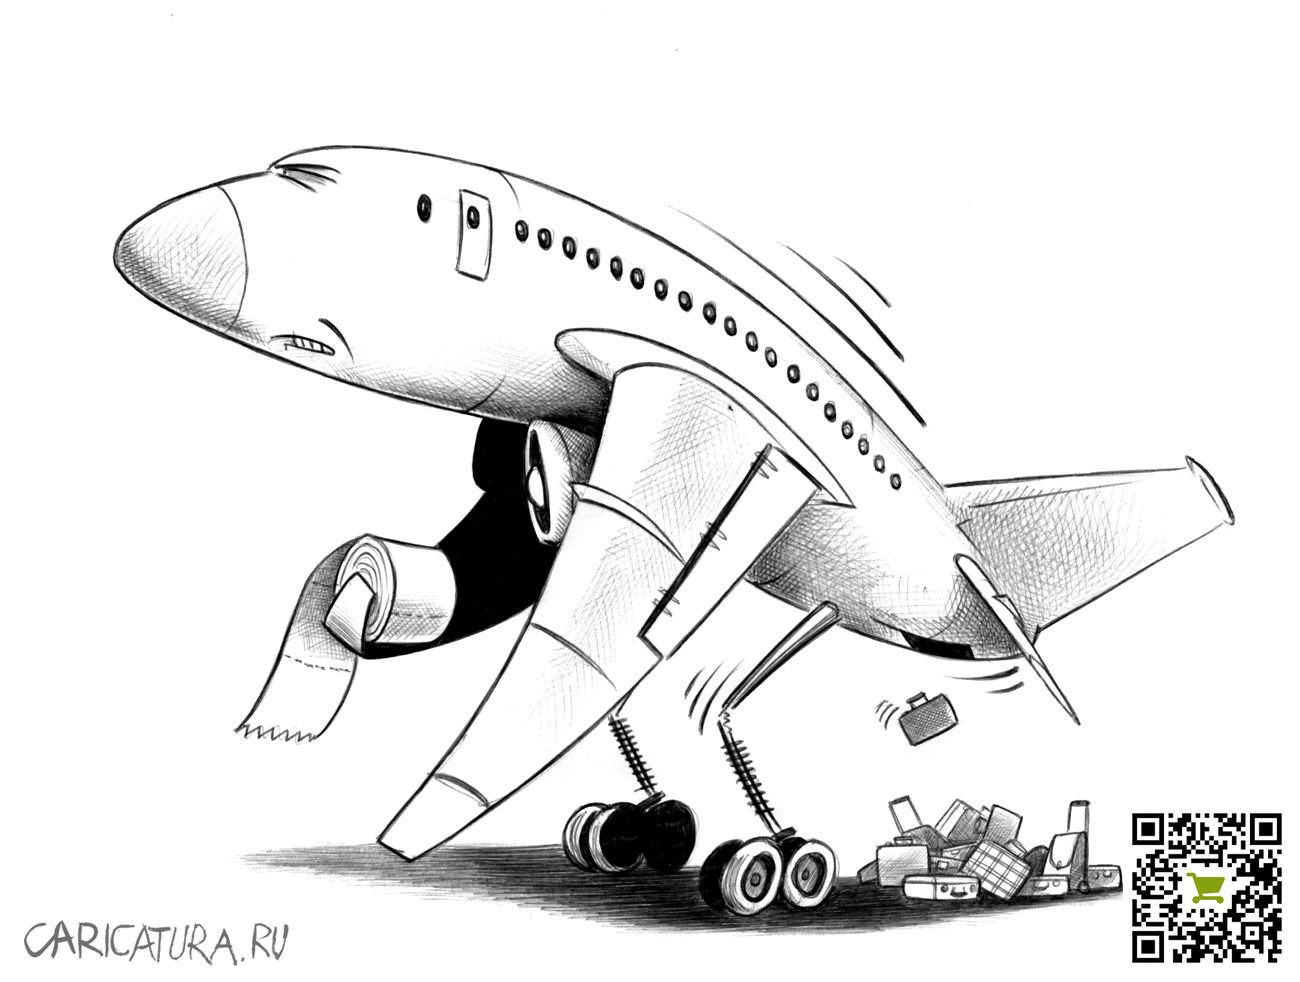 Карикатура "Багаж", Сергей Корсун